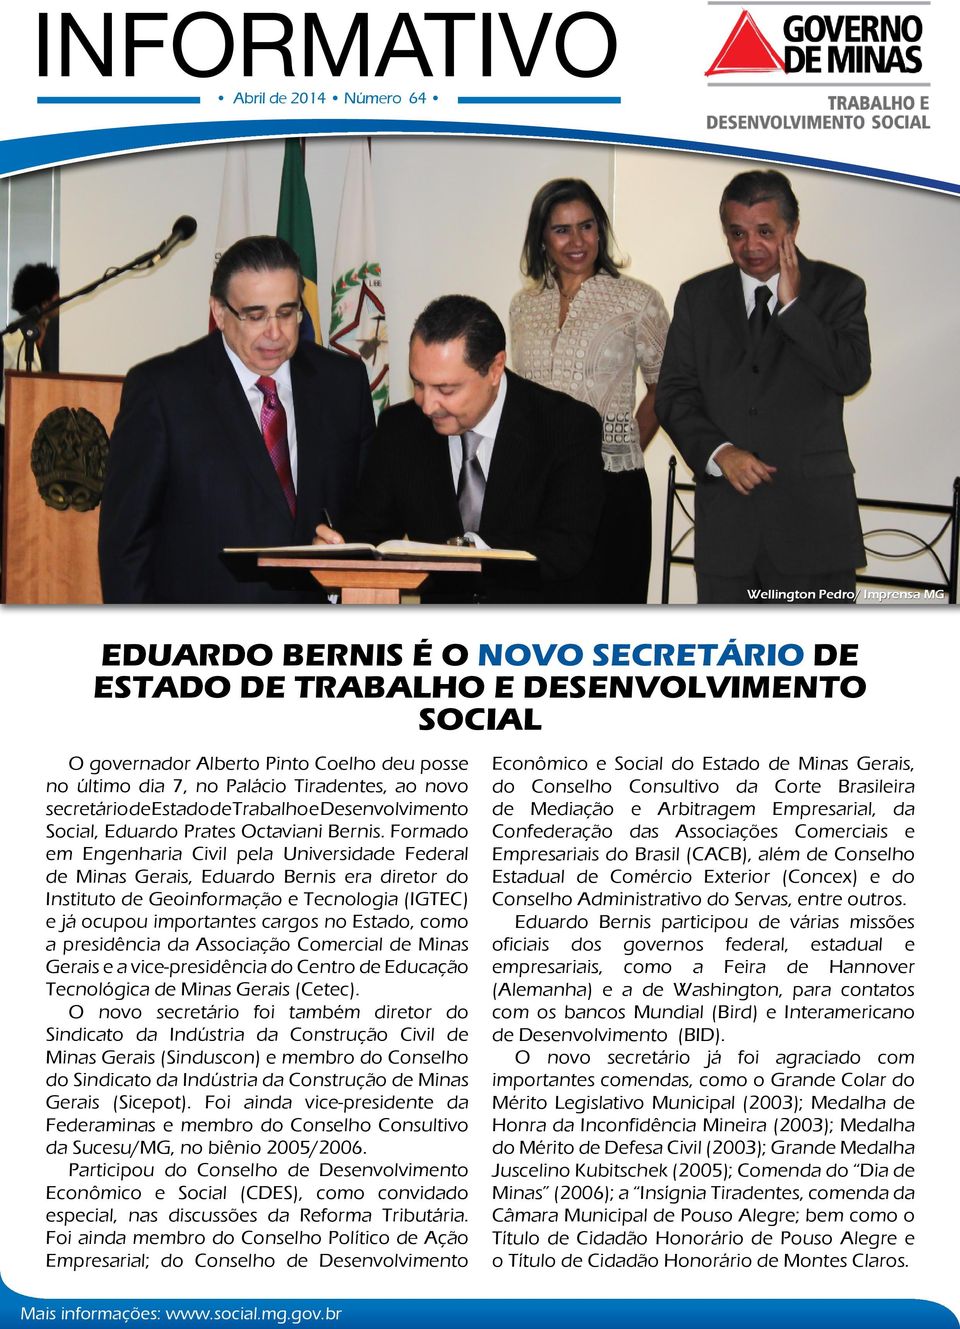 Formado em Engenharia Civil pela Universidade Federal de Minas Gerais, Eduardo Bernis era diretor do Instituto de Geoinformação e Tecnologia (IGTEC) e já ocupou importantes cargos no Estado, como a